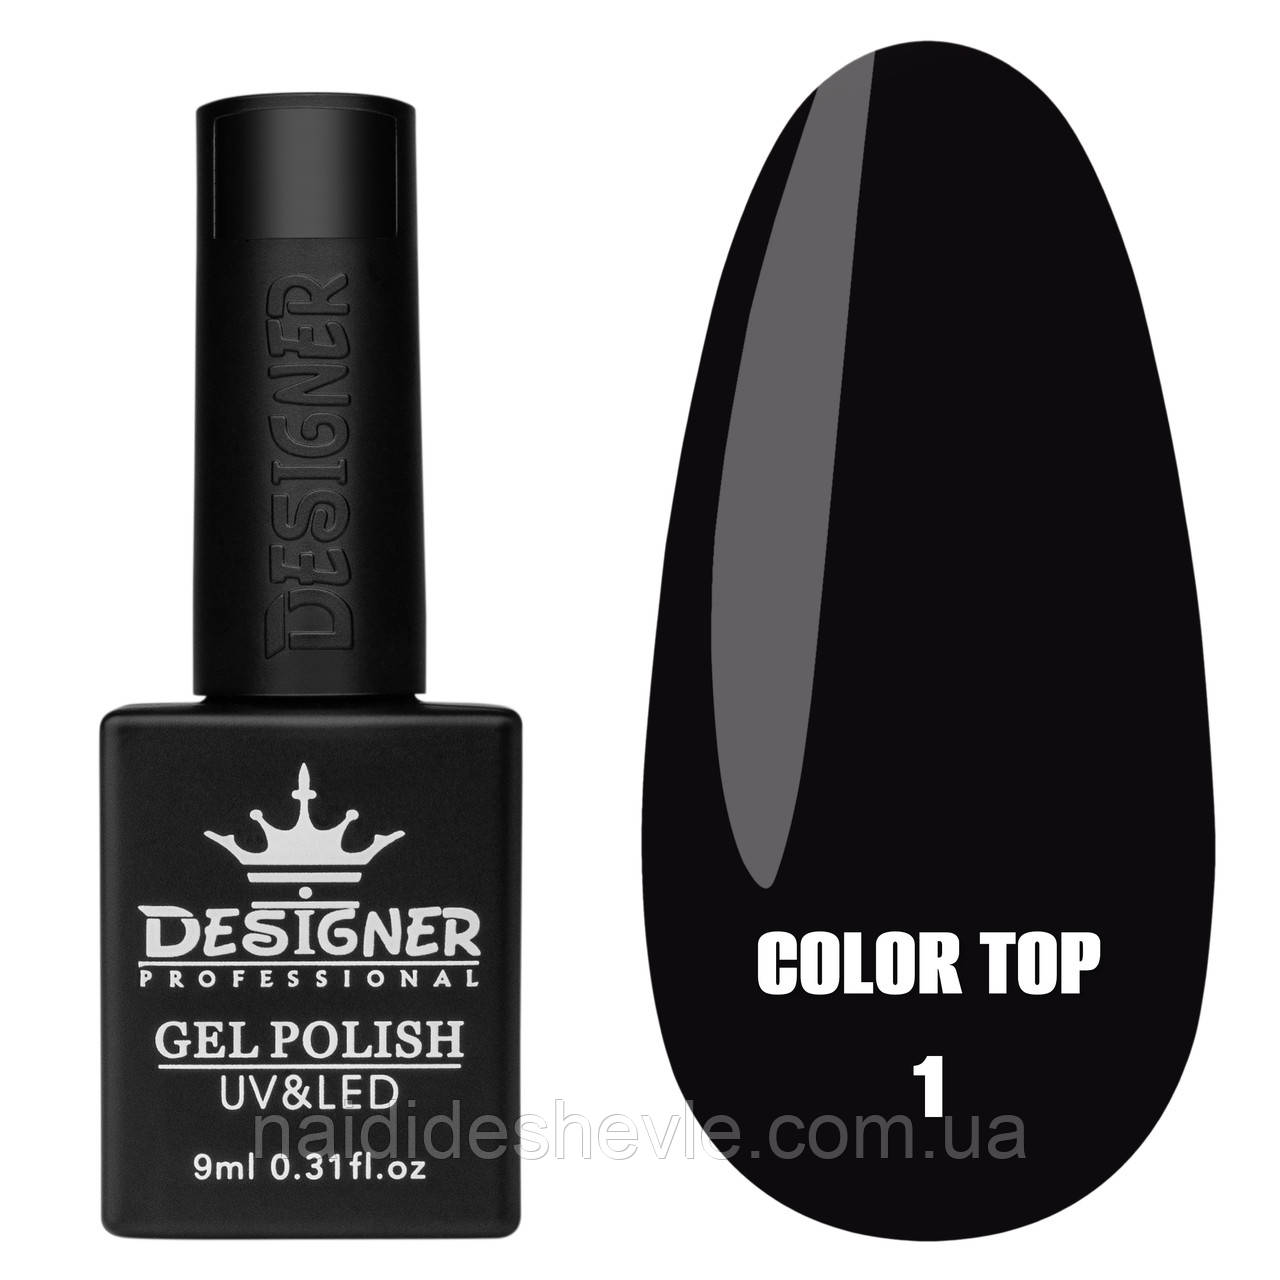 Color Top Дизайнер (9 мл.) - кольорове топове покриття для нігтів з вітражним ефектом Чорний 01